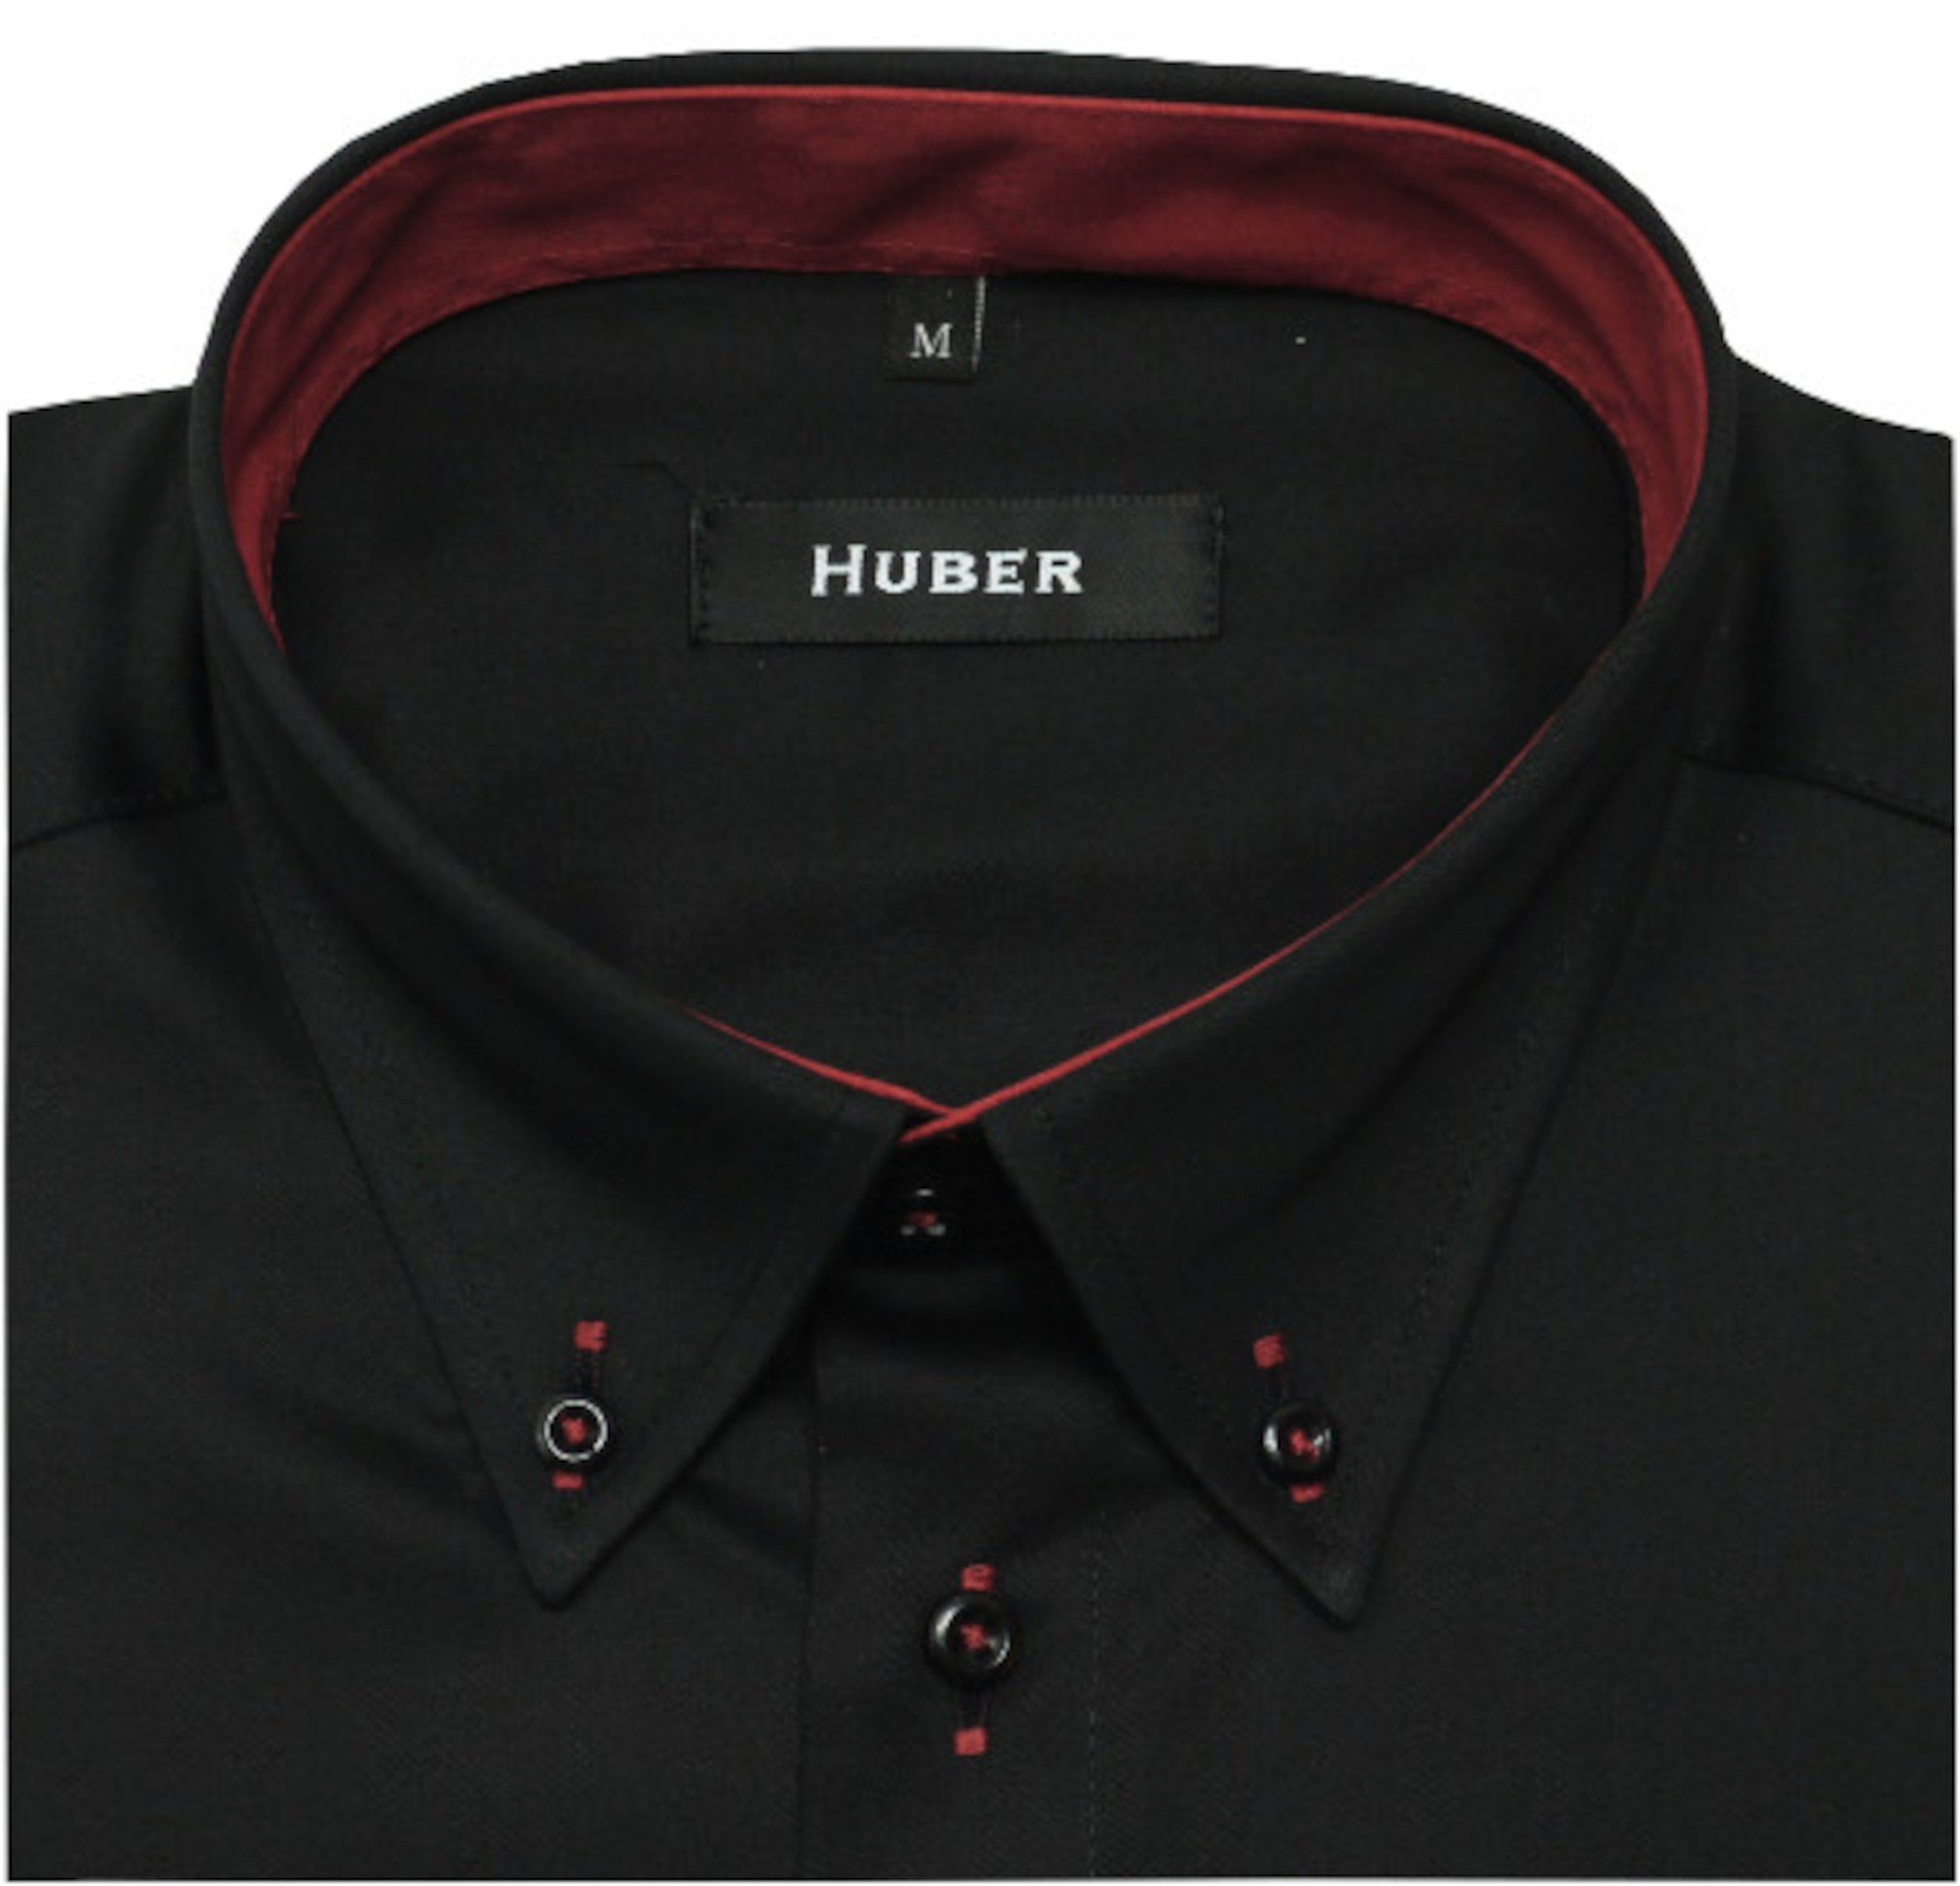 Hemden Schnitt, Made Kontrast, Kurzarmhemd EU in Huber Button-down, HU-0157 Regular-gerader Kurzarm,